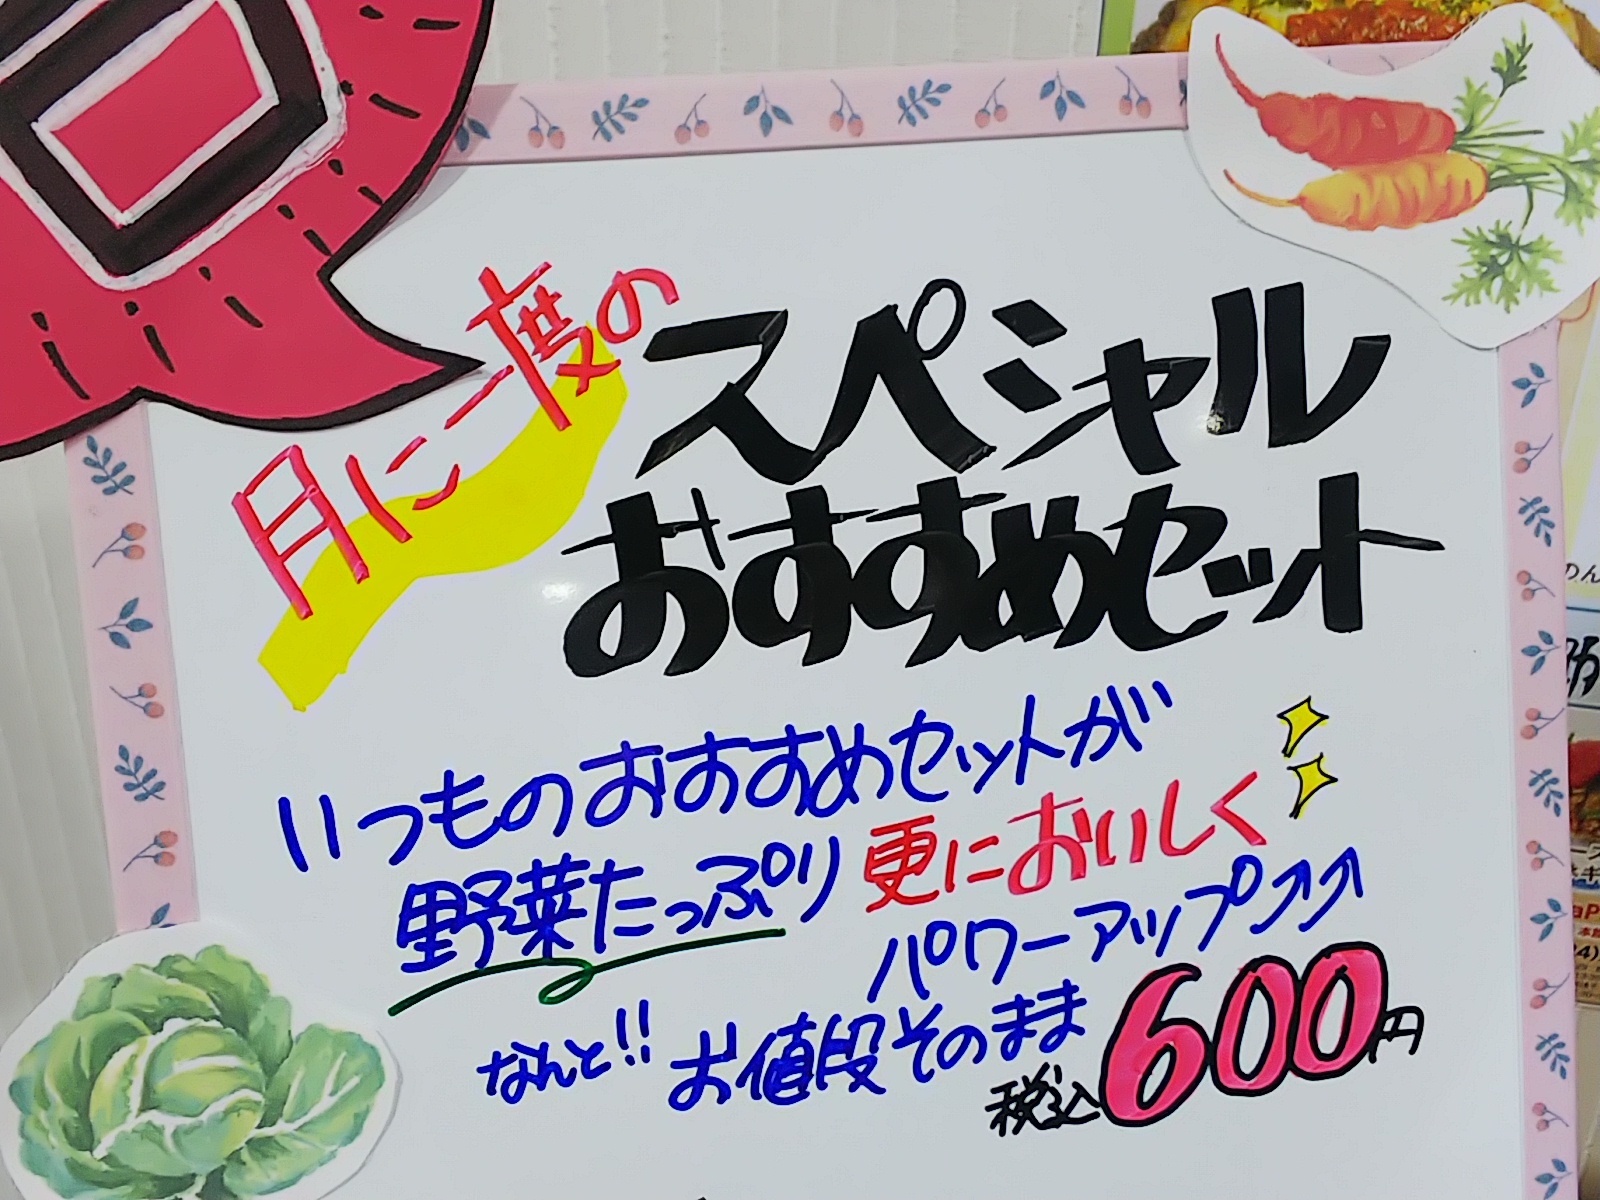 東広島市役所10階展望レストラン「ビストロパパ市役所店」の「月に一度のスペシャルおすすめセット」